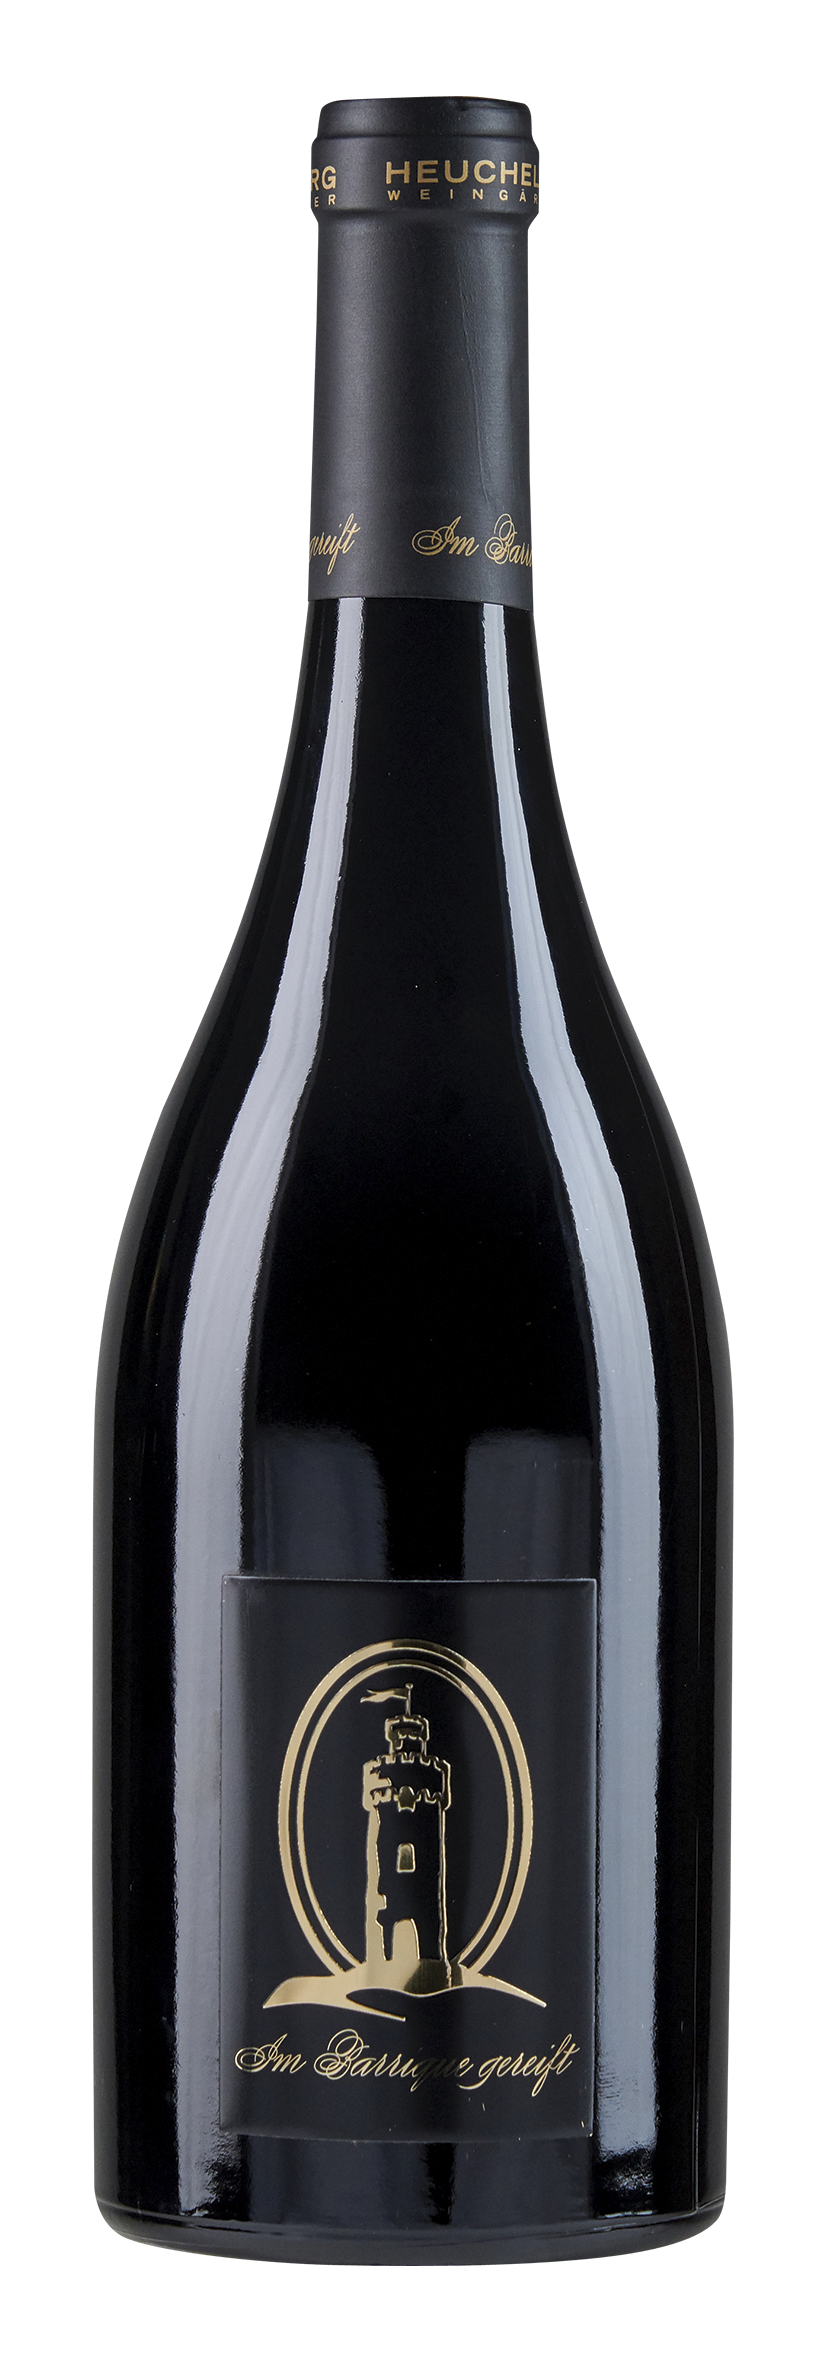 2016 Cuvée Cabernet, im Barrique gereift, trocken, Flaschenansicht im Bericht über trockene Rotweine zwischen 20 und 30 €.